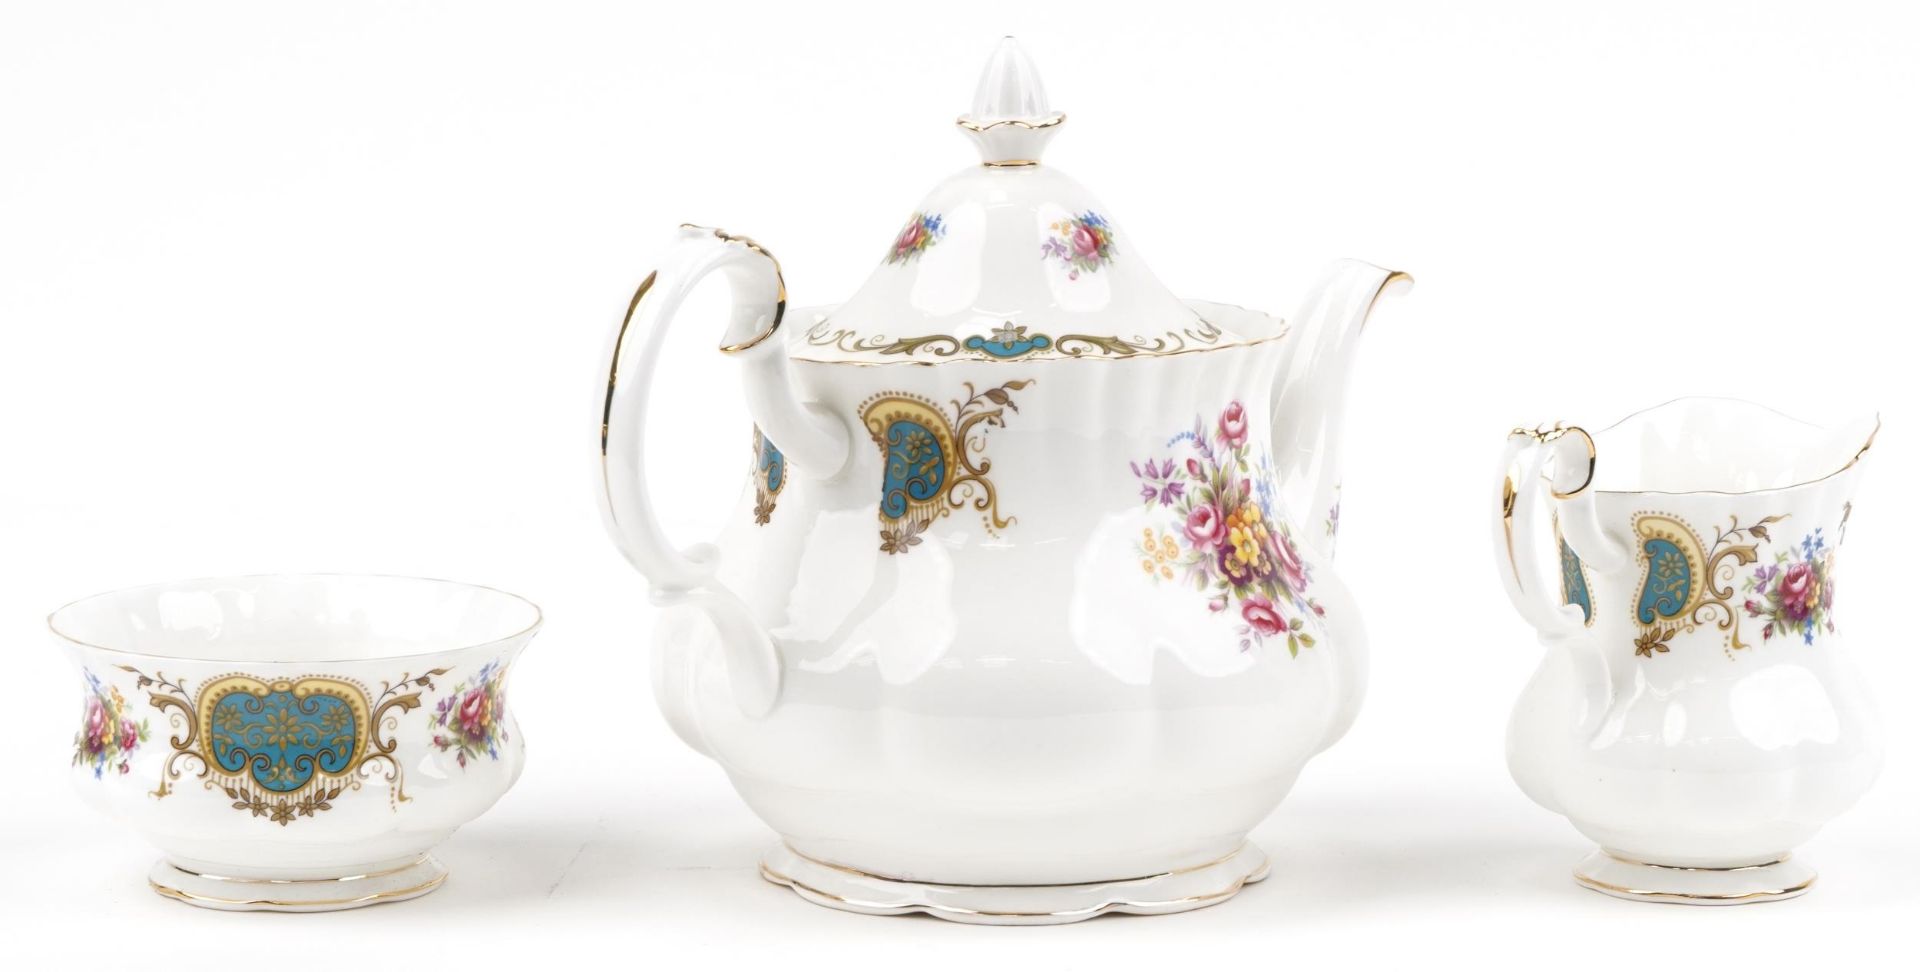 Royal Albert Berkeley teapot, milk jug and sugar bowl, the teapot 25cm in length - Image 2 of 4